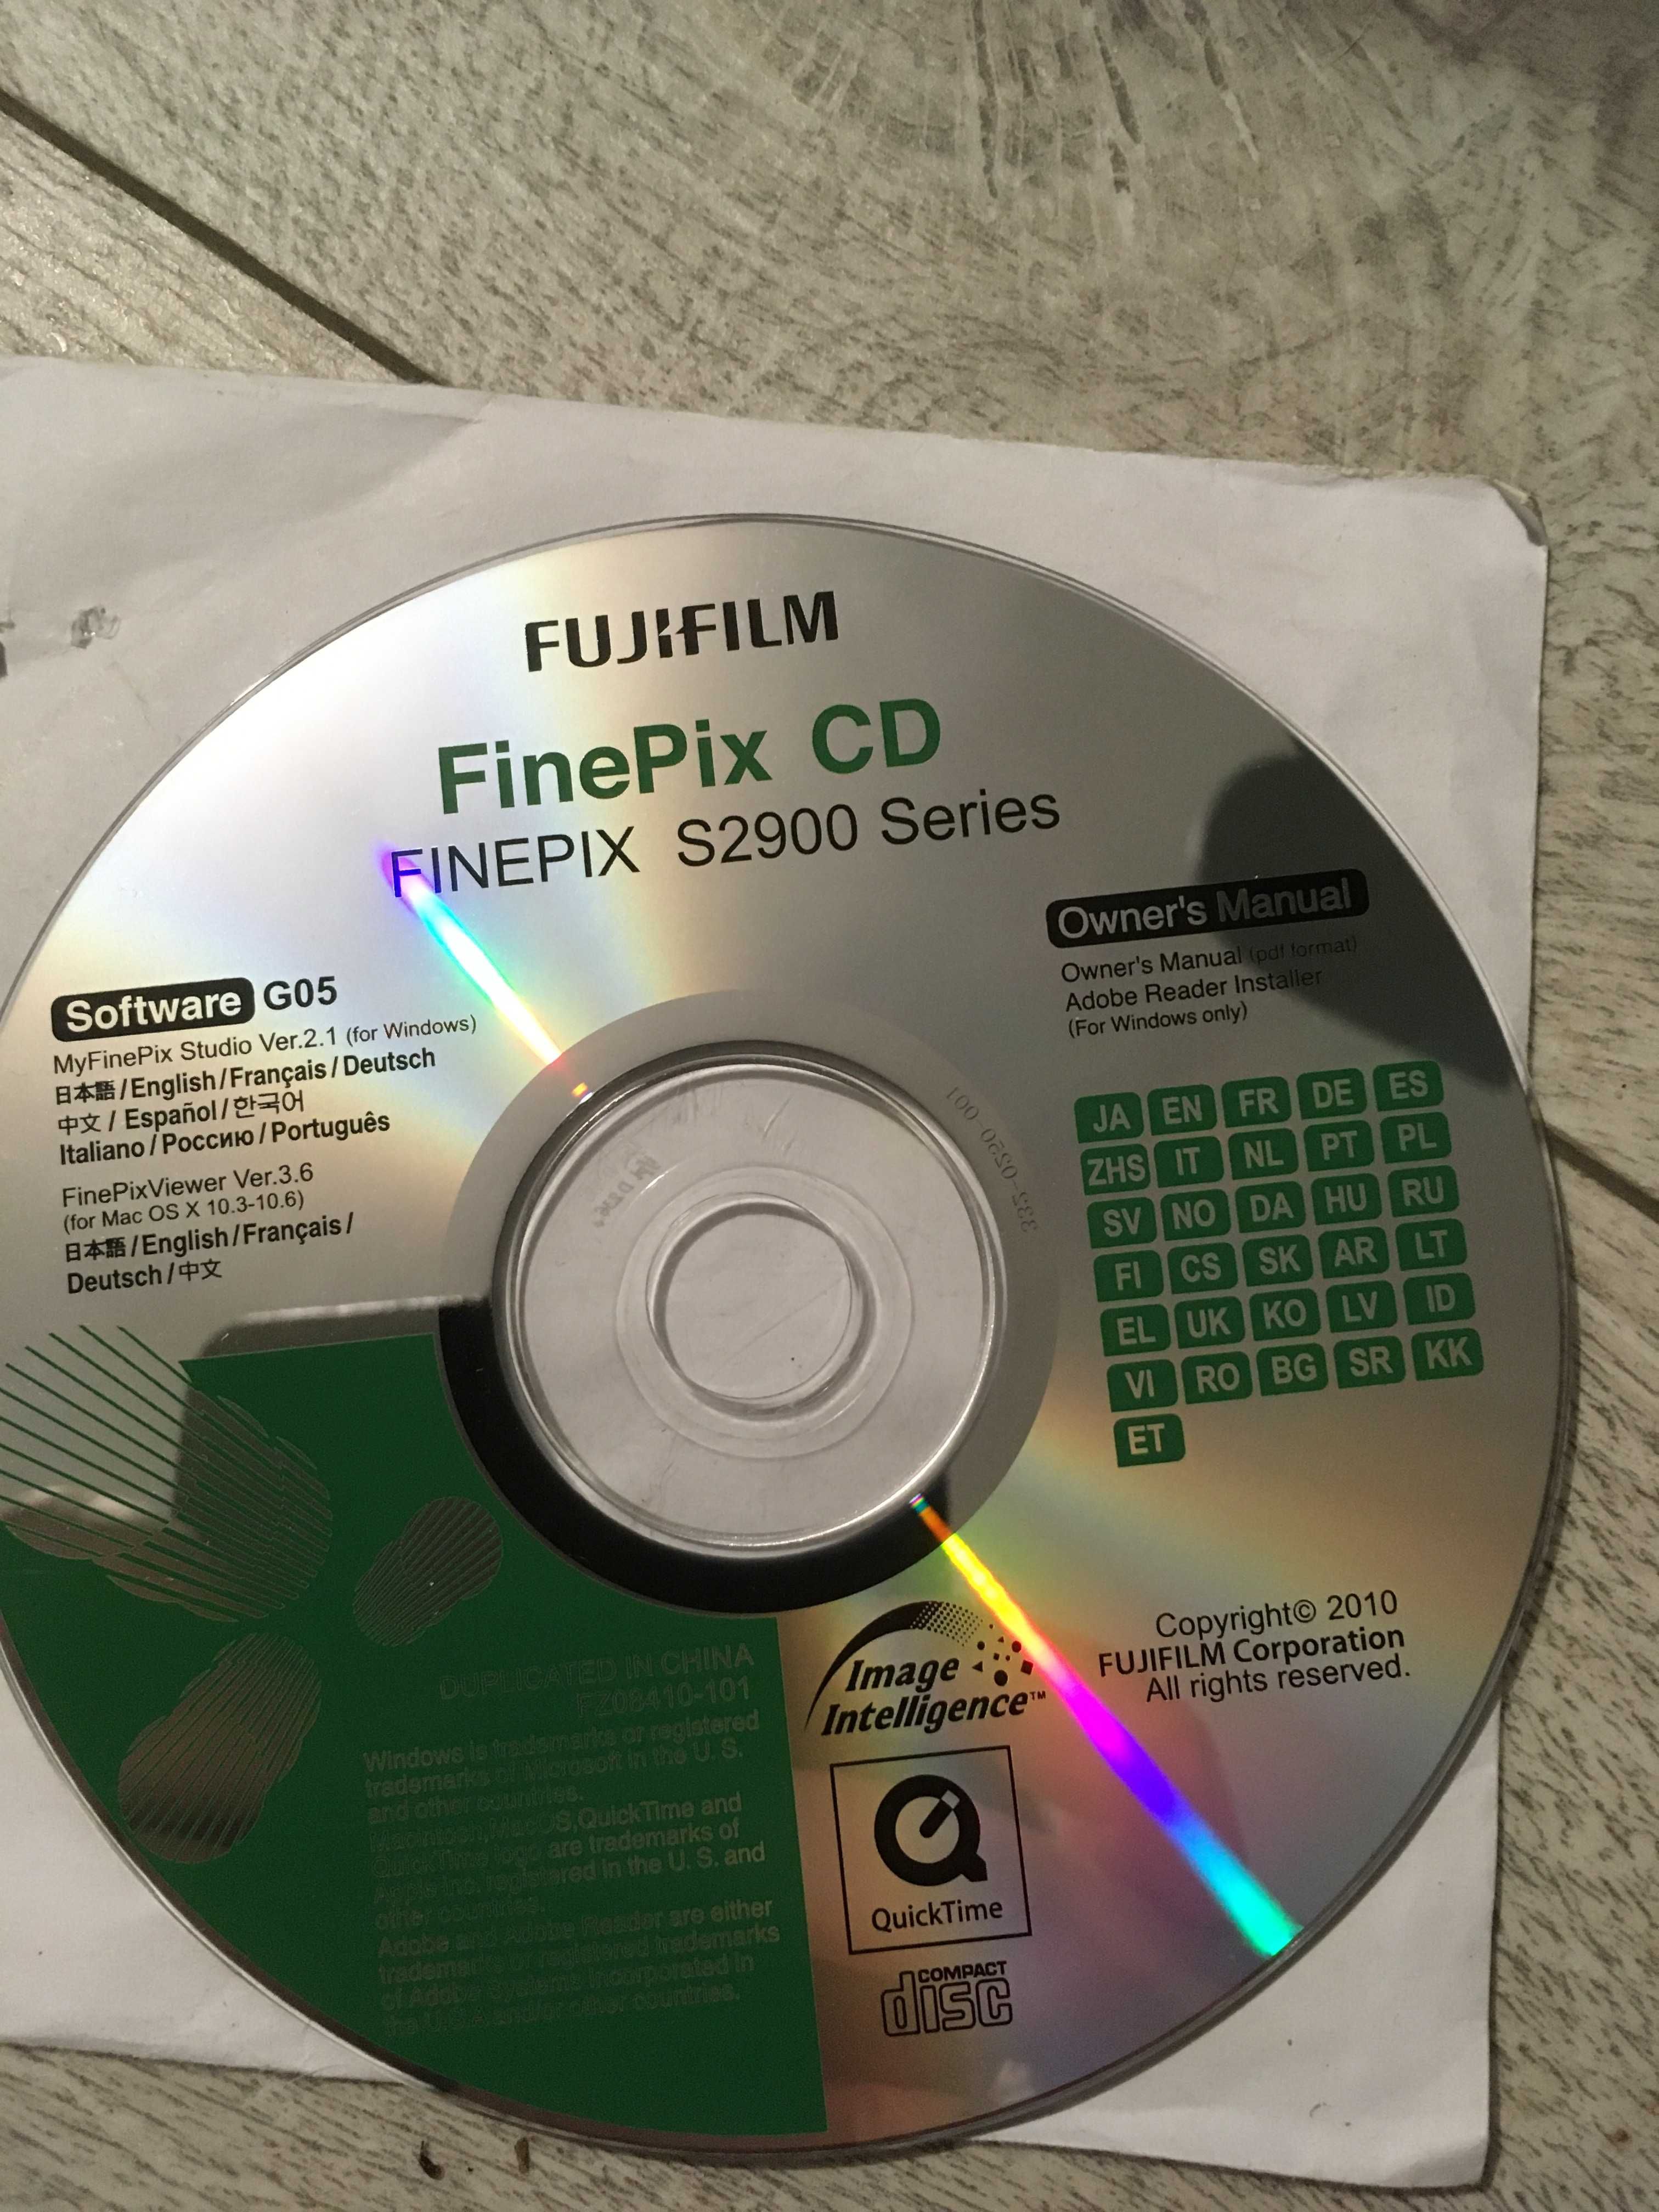 FujiFilm FinePix S2950